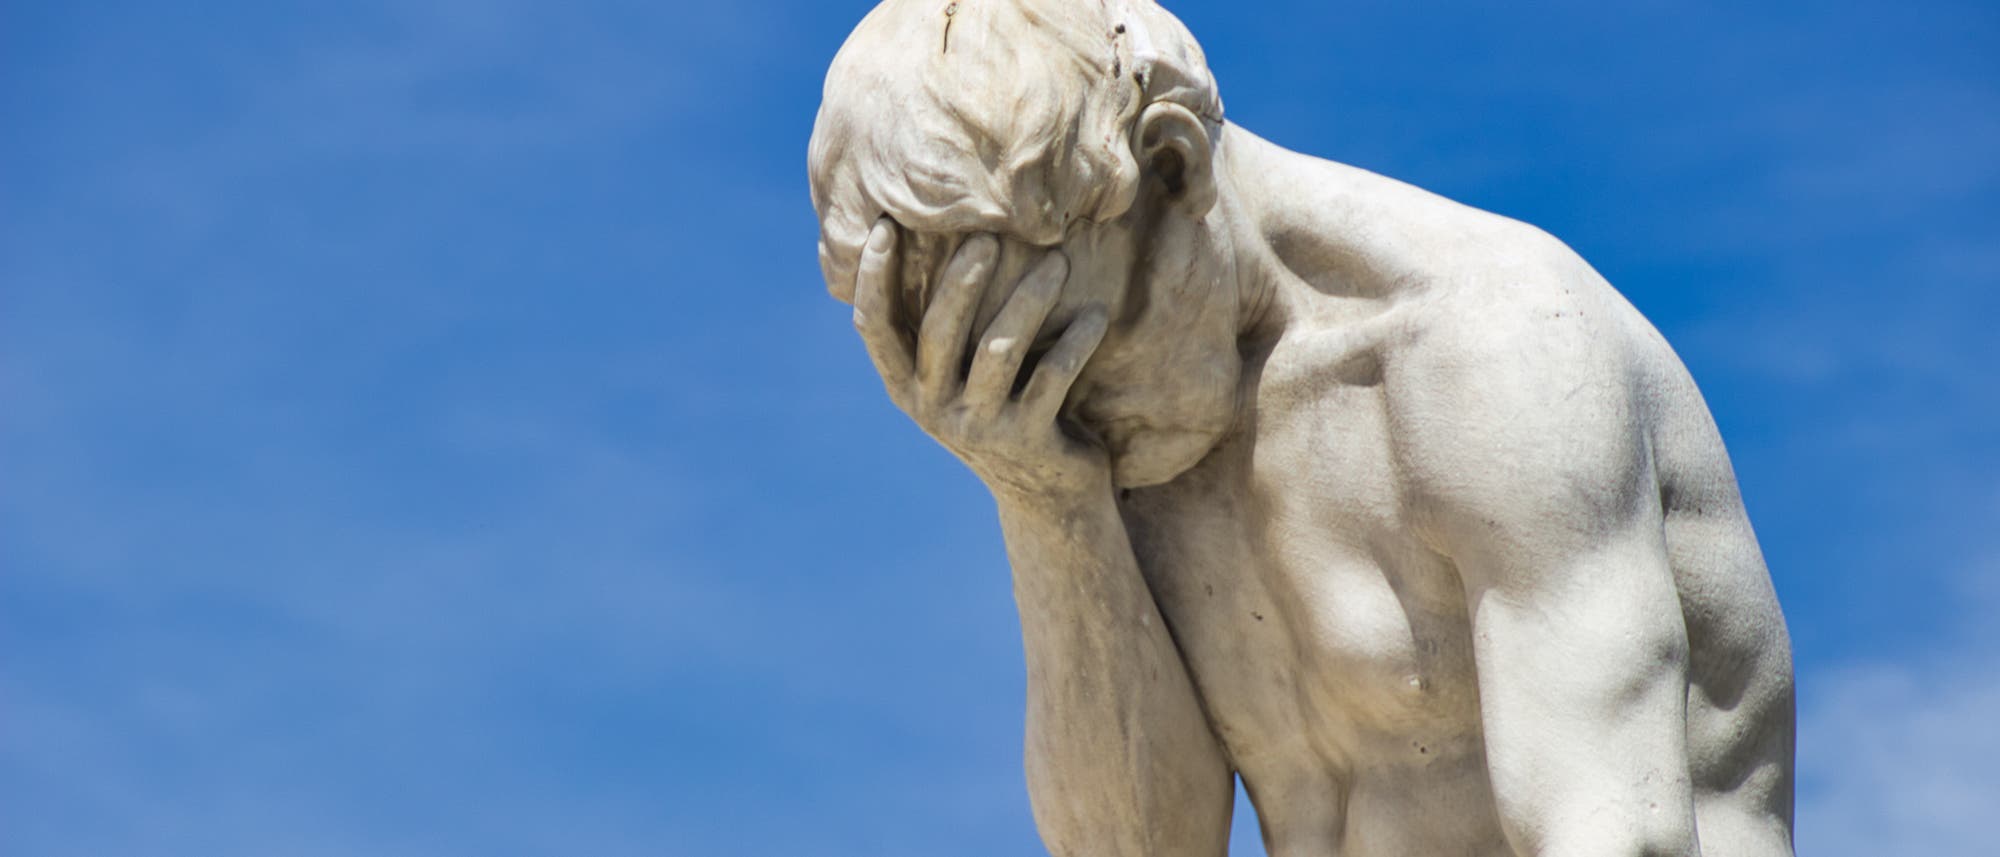 Statue des Kain von Henri Vidal im Jardin des Tuileries. Das Kunstwerk entstand vor dem Aufkommen von Social Media, der Bildhauer kann noch keine Facebook-Kommentare gekannt haben. Erstaunlich, aber wahr.